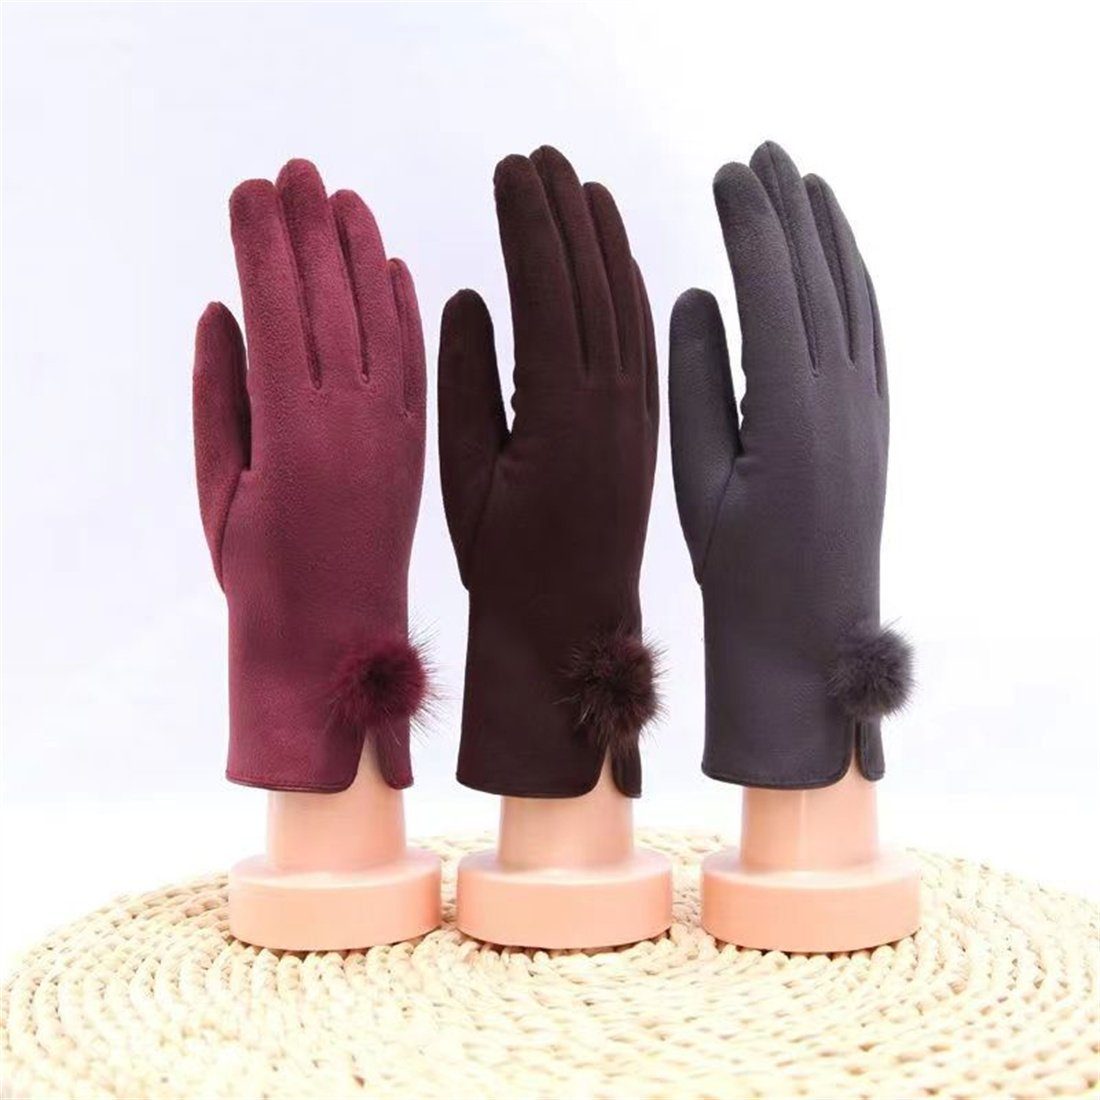 DÖRÖY Fleecehandschuhe warme Wintermode Damen Handschuhe, gepolsterte Touchscreen-Handschuhe Grau